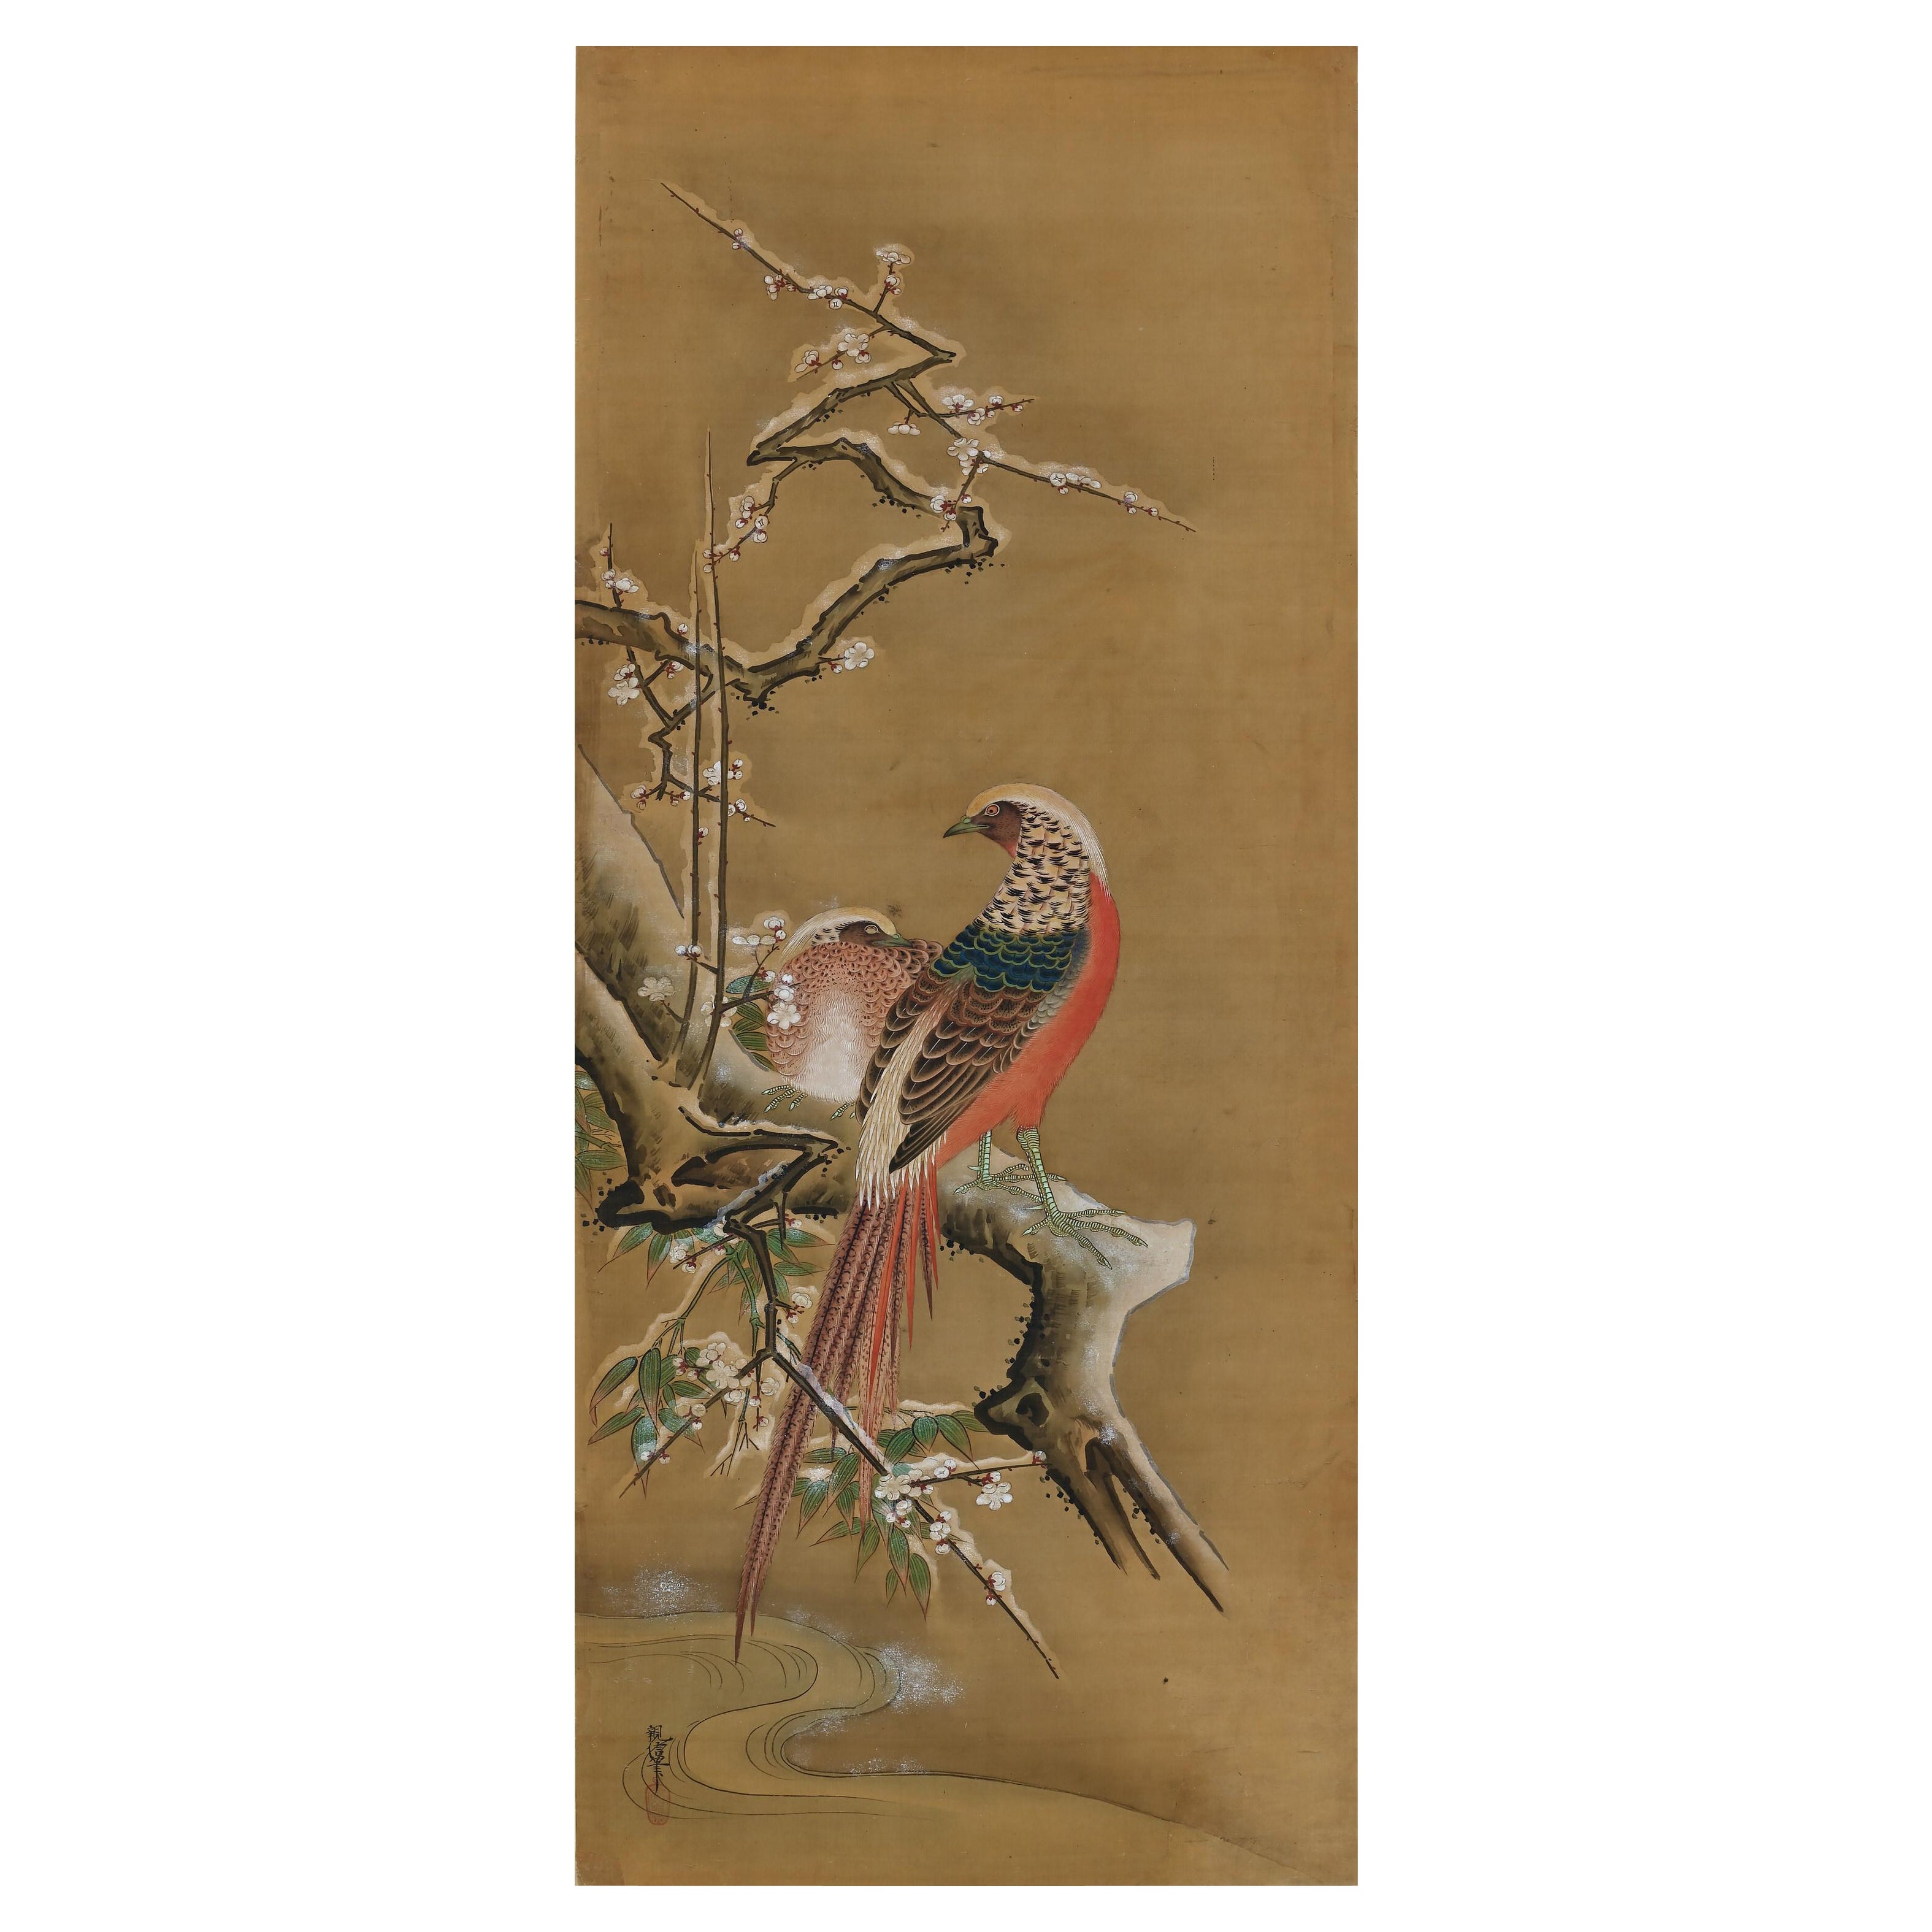 19th Century Japanese Silk Painting by Kano Chikanobu, Pheasants & Plum in Snow